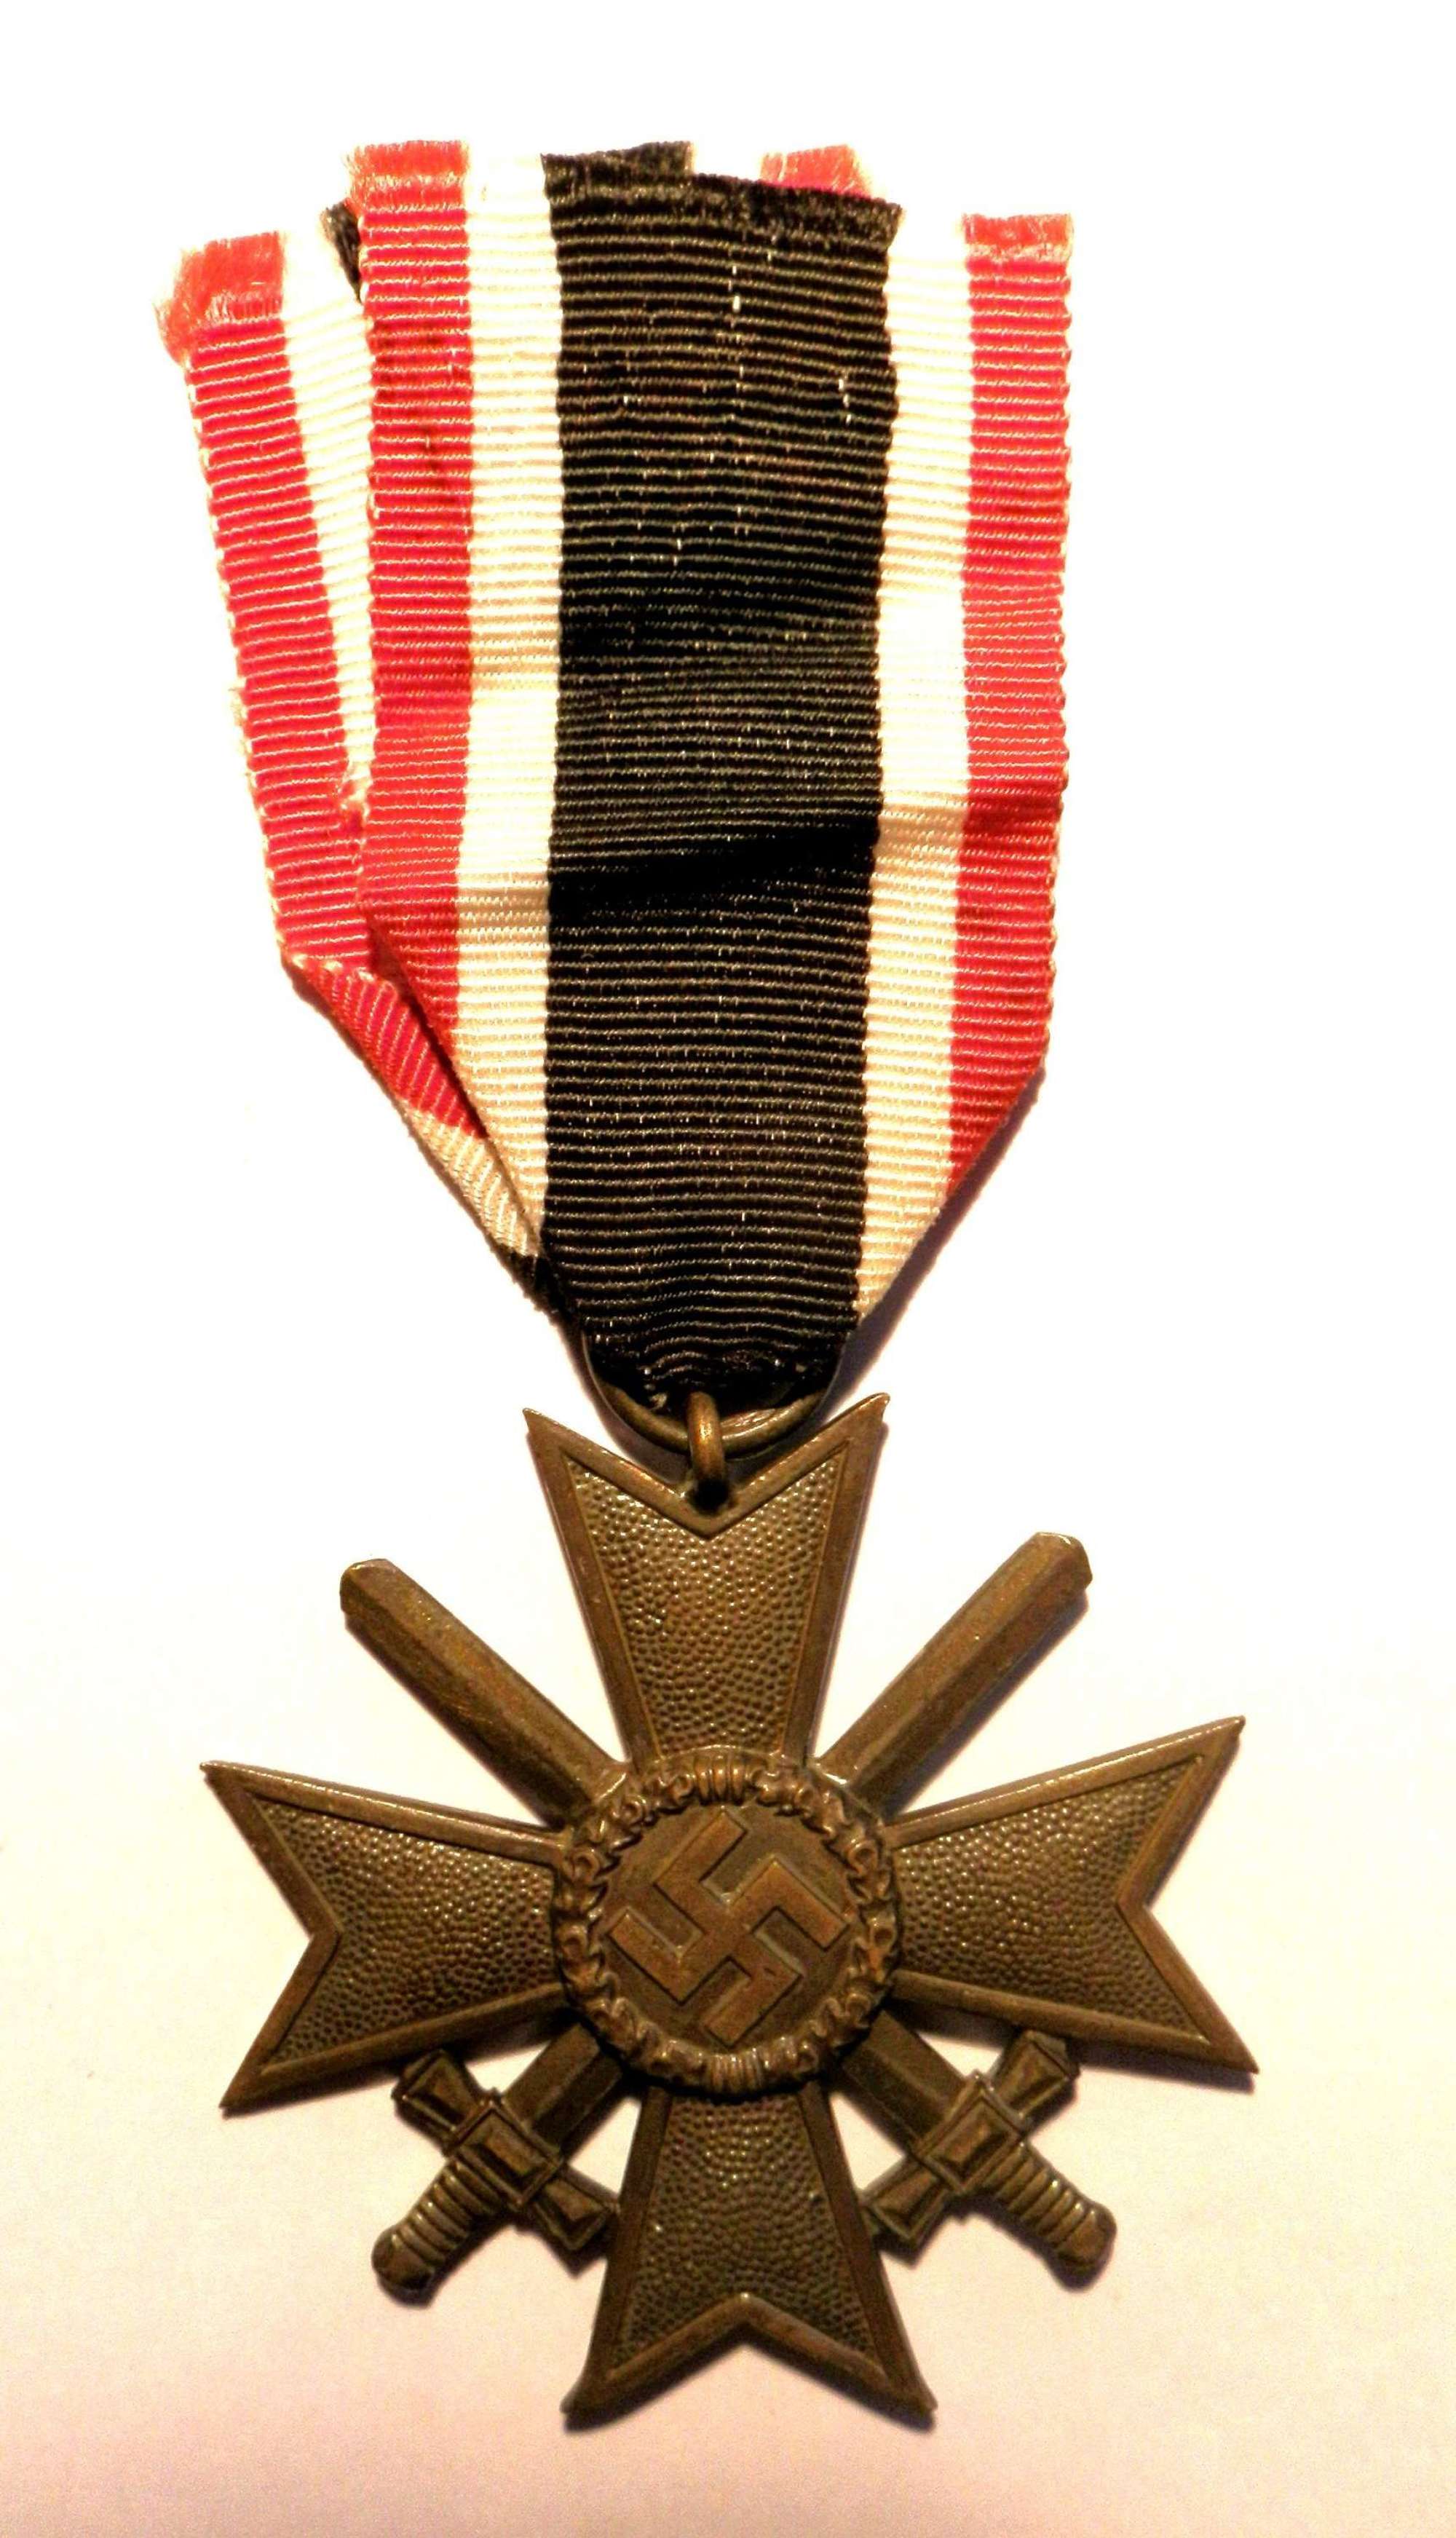 War Merit Cross, 2nd Class with Swords. Maker marked 85.